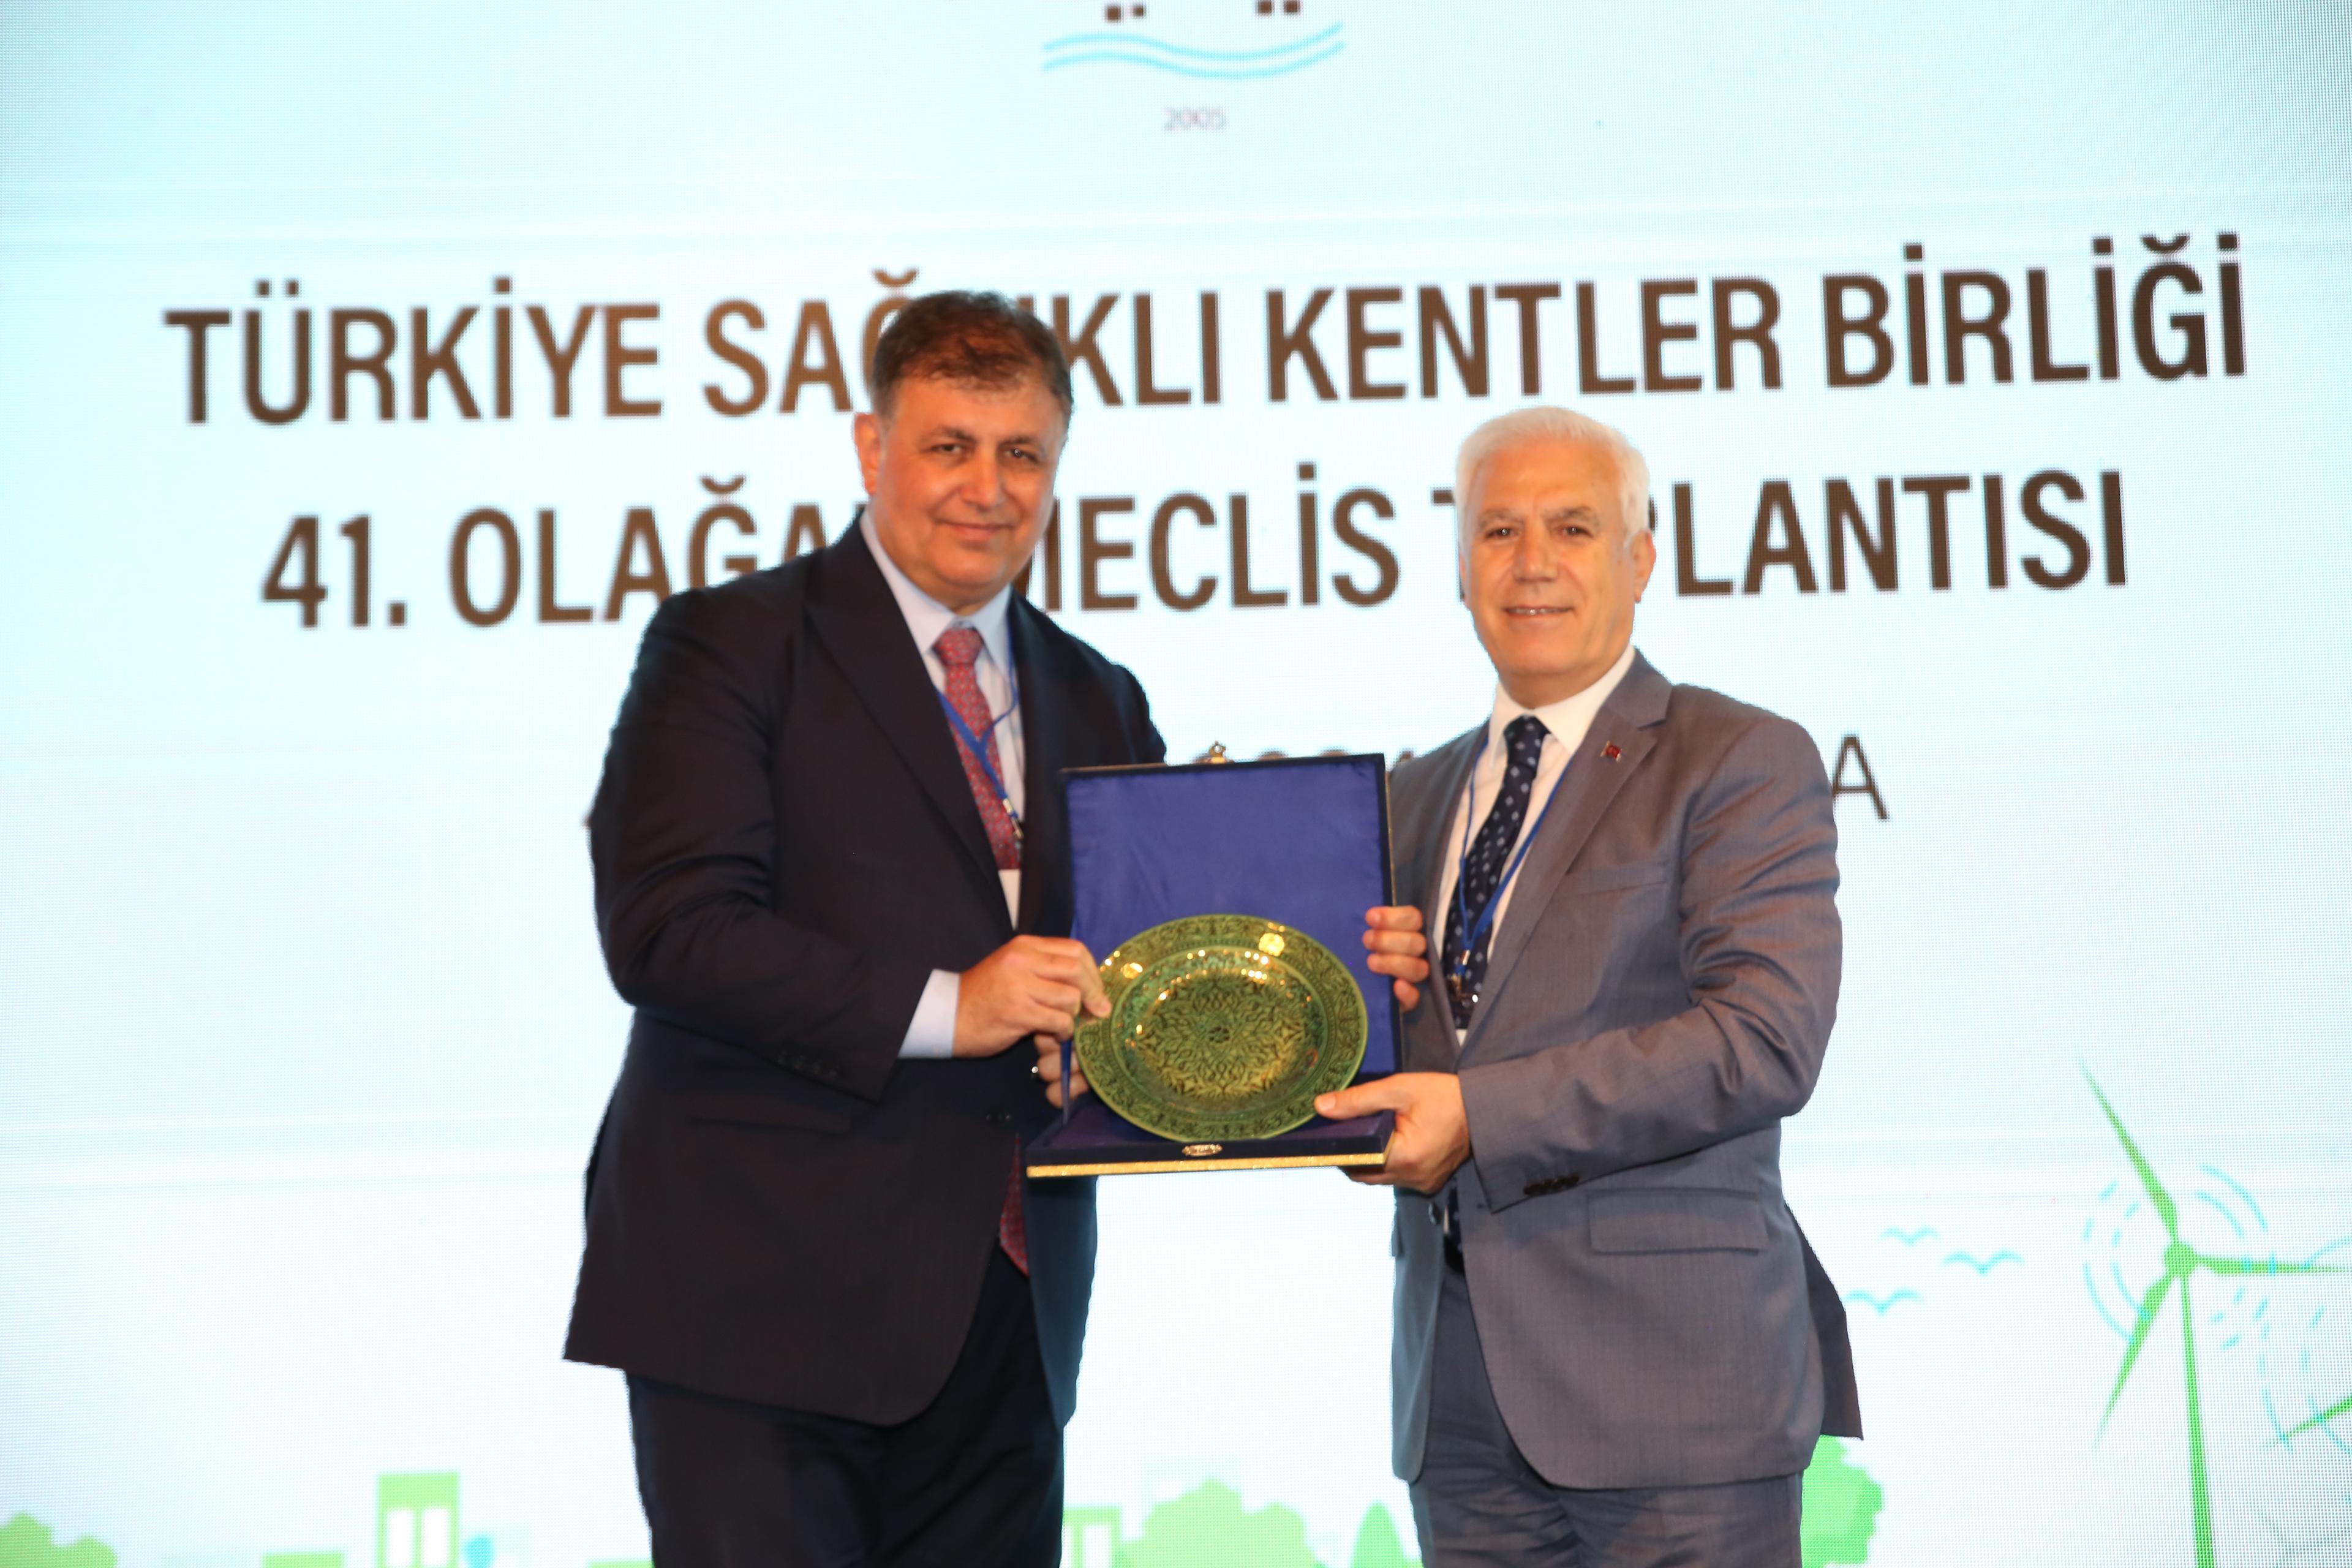 Sağlıklı Kentler Birliği Bursa’da Yeni Başkanını Seçti (1)